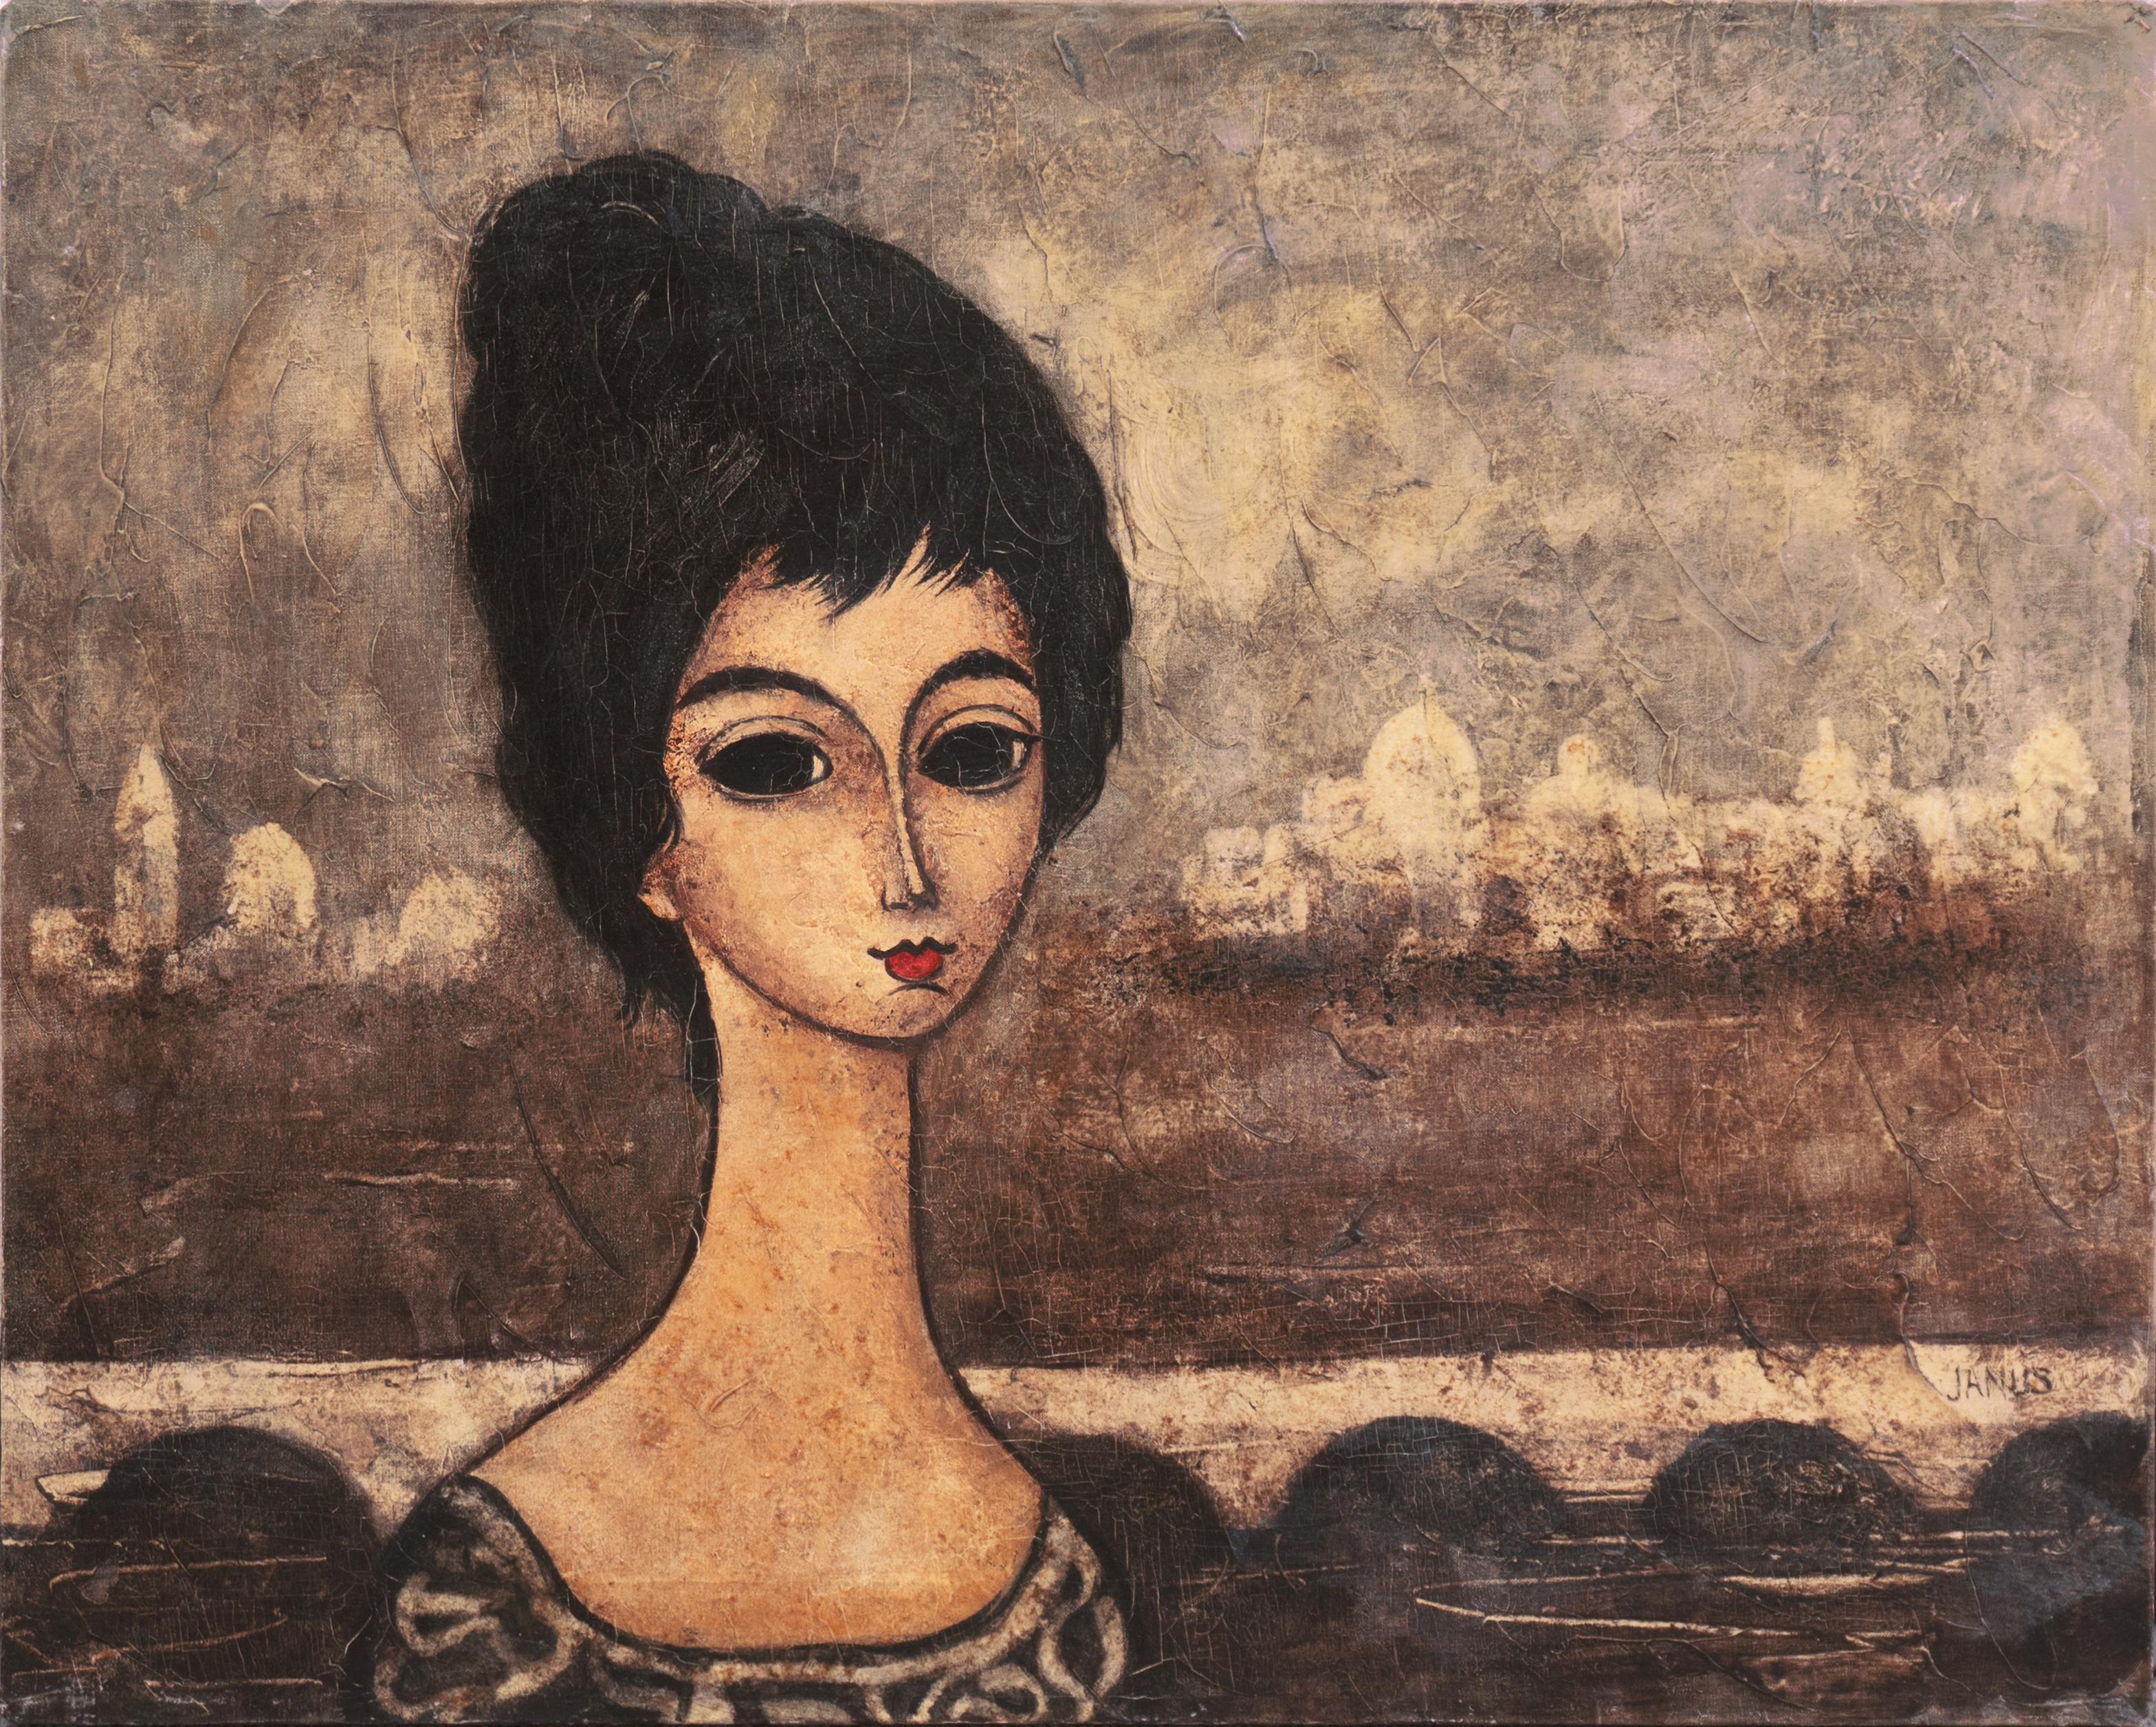 Ian Janus Landscape Painting - 'Young Venetian Woman', Paris, Post Impressionist Figural, La Veneziana